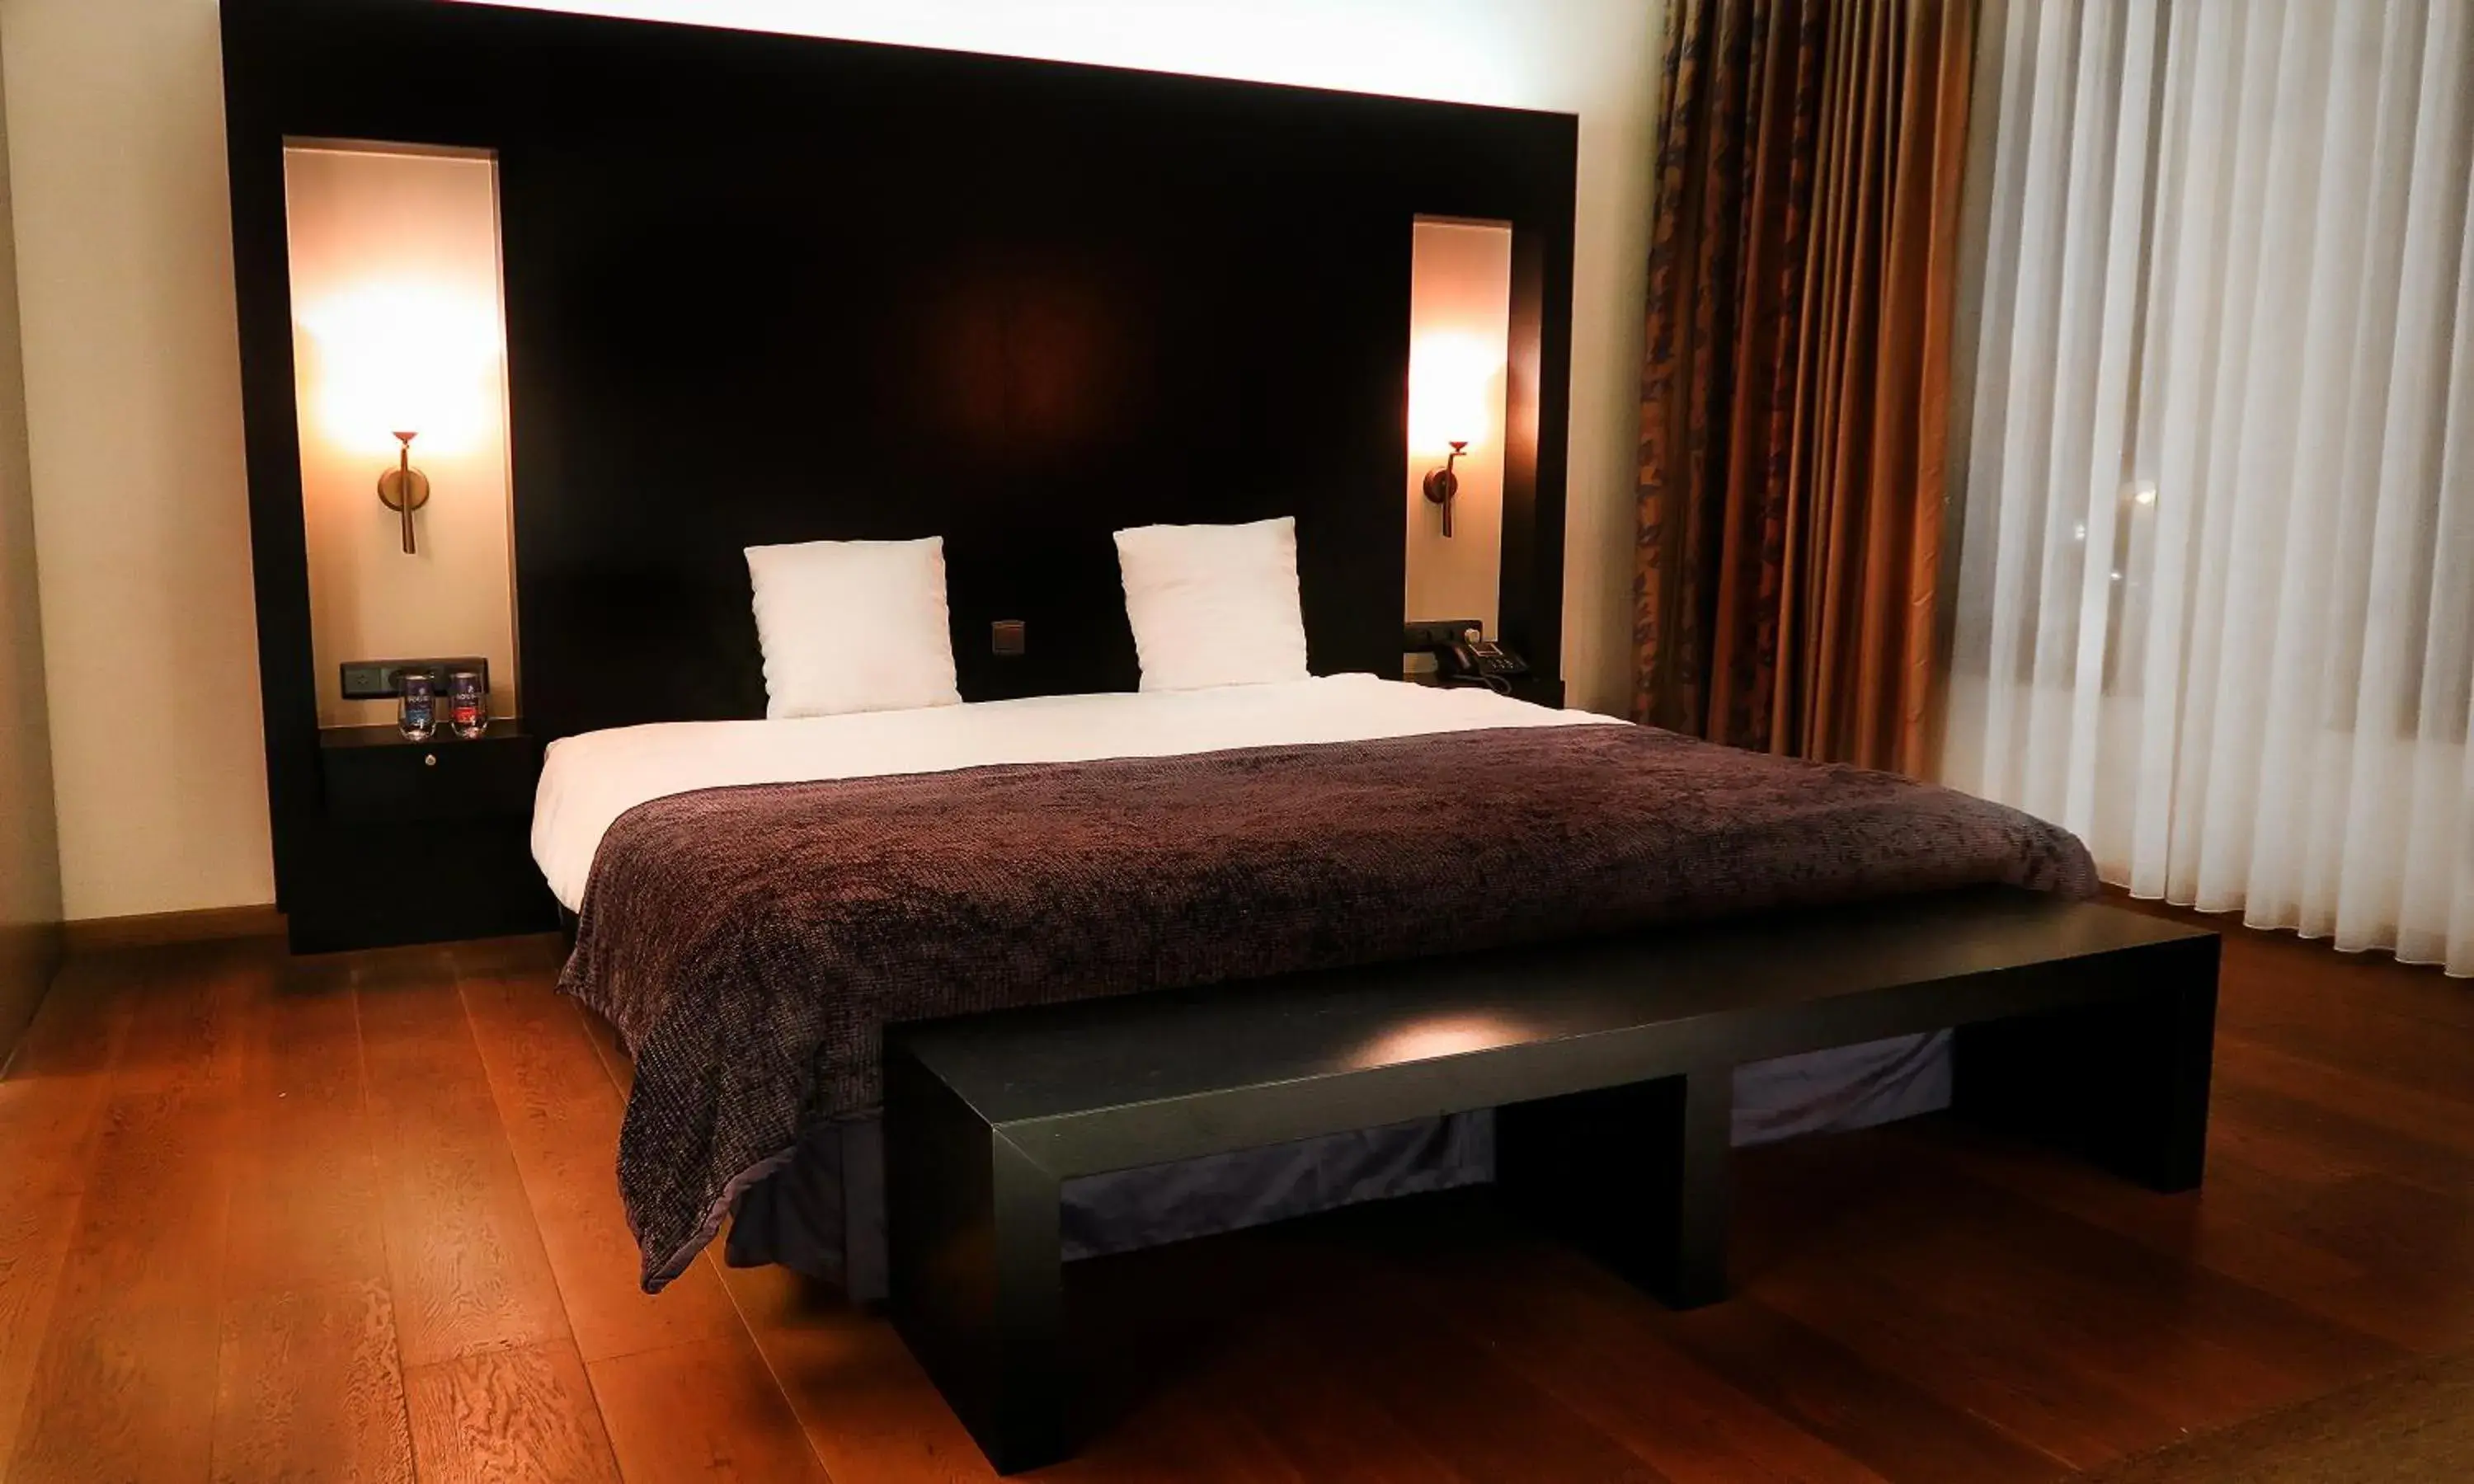 Bedroom, Room Photo in Hotel Van Eyck